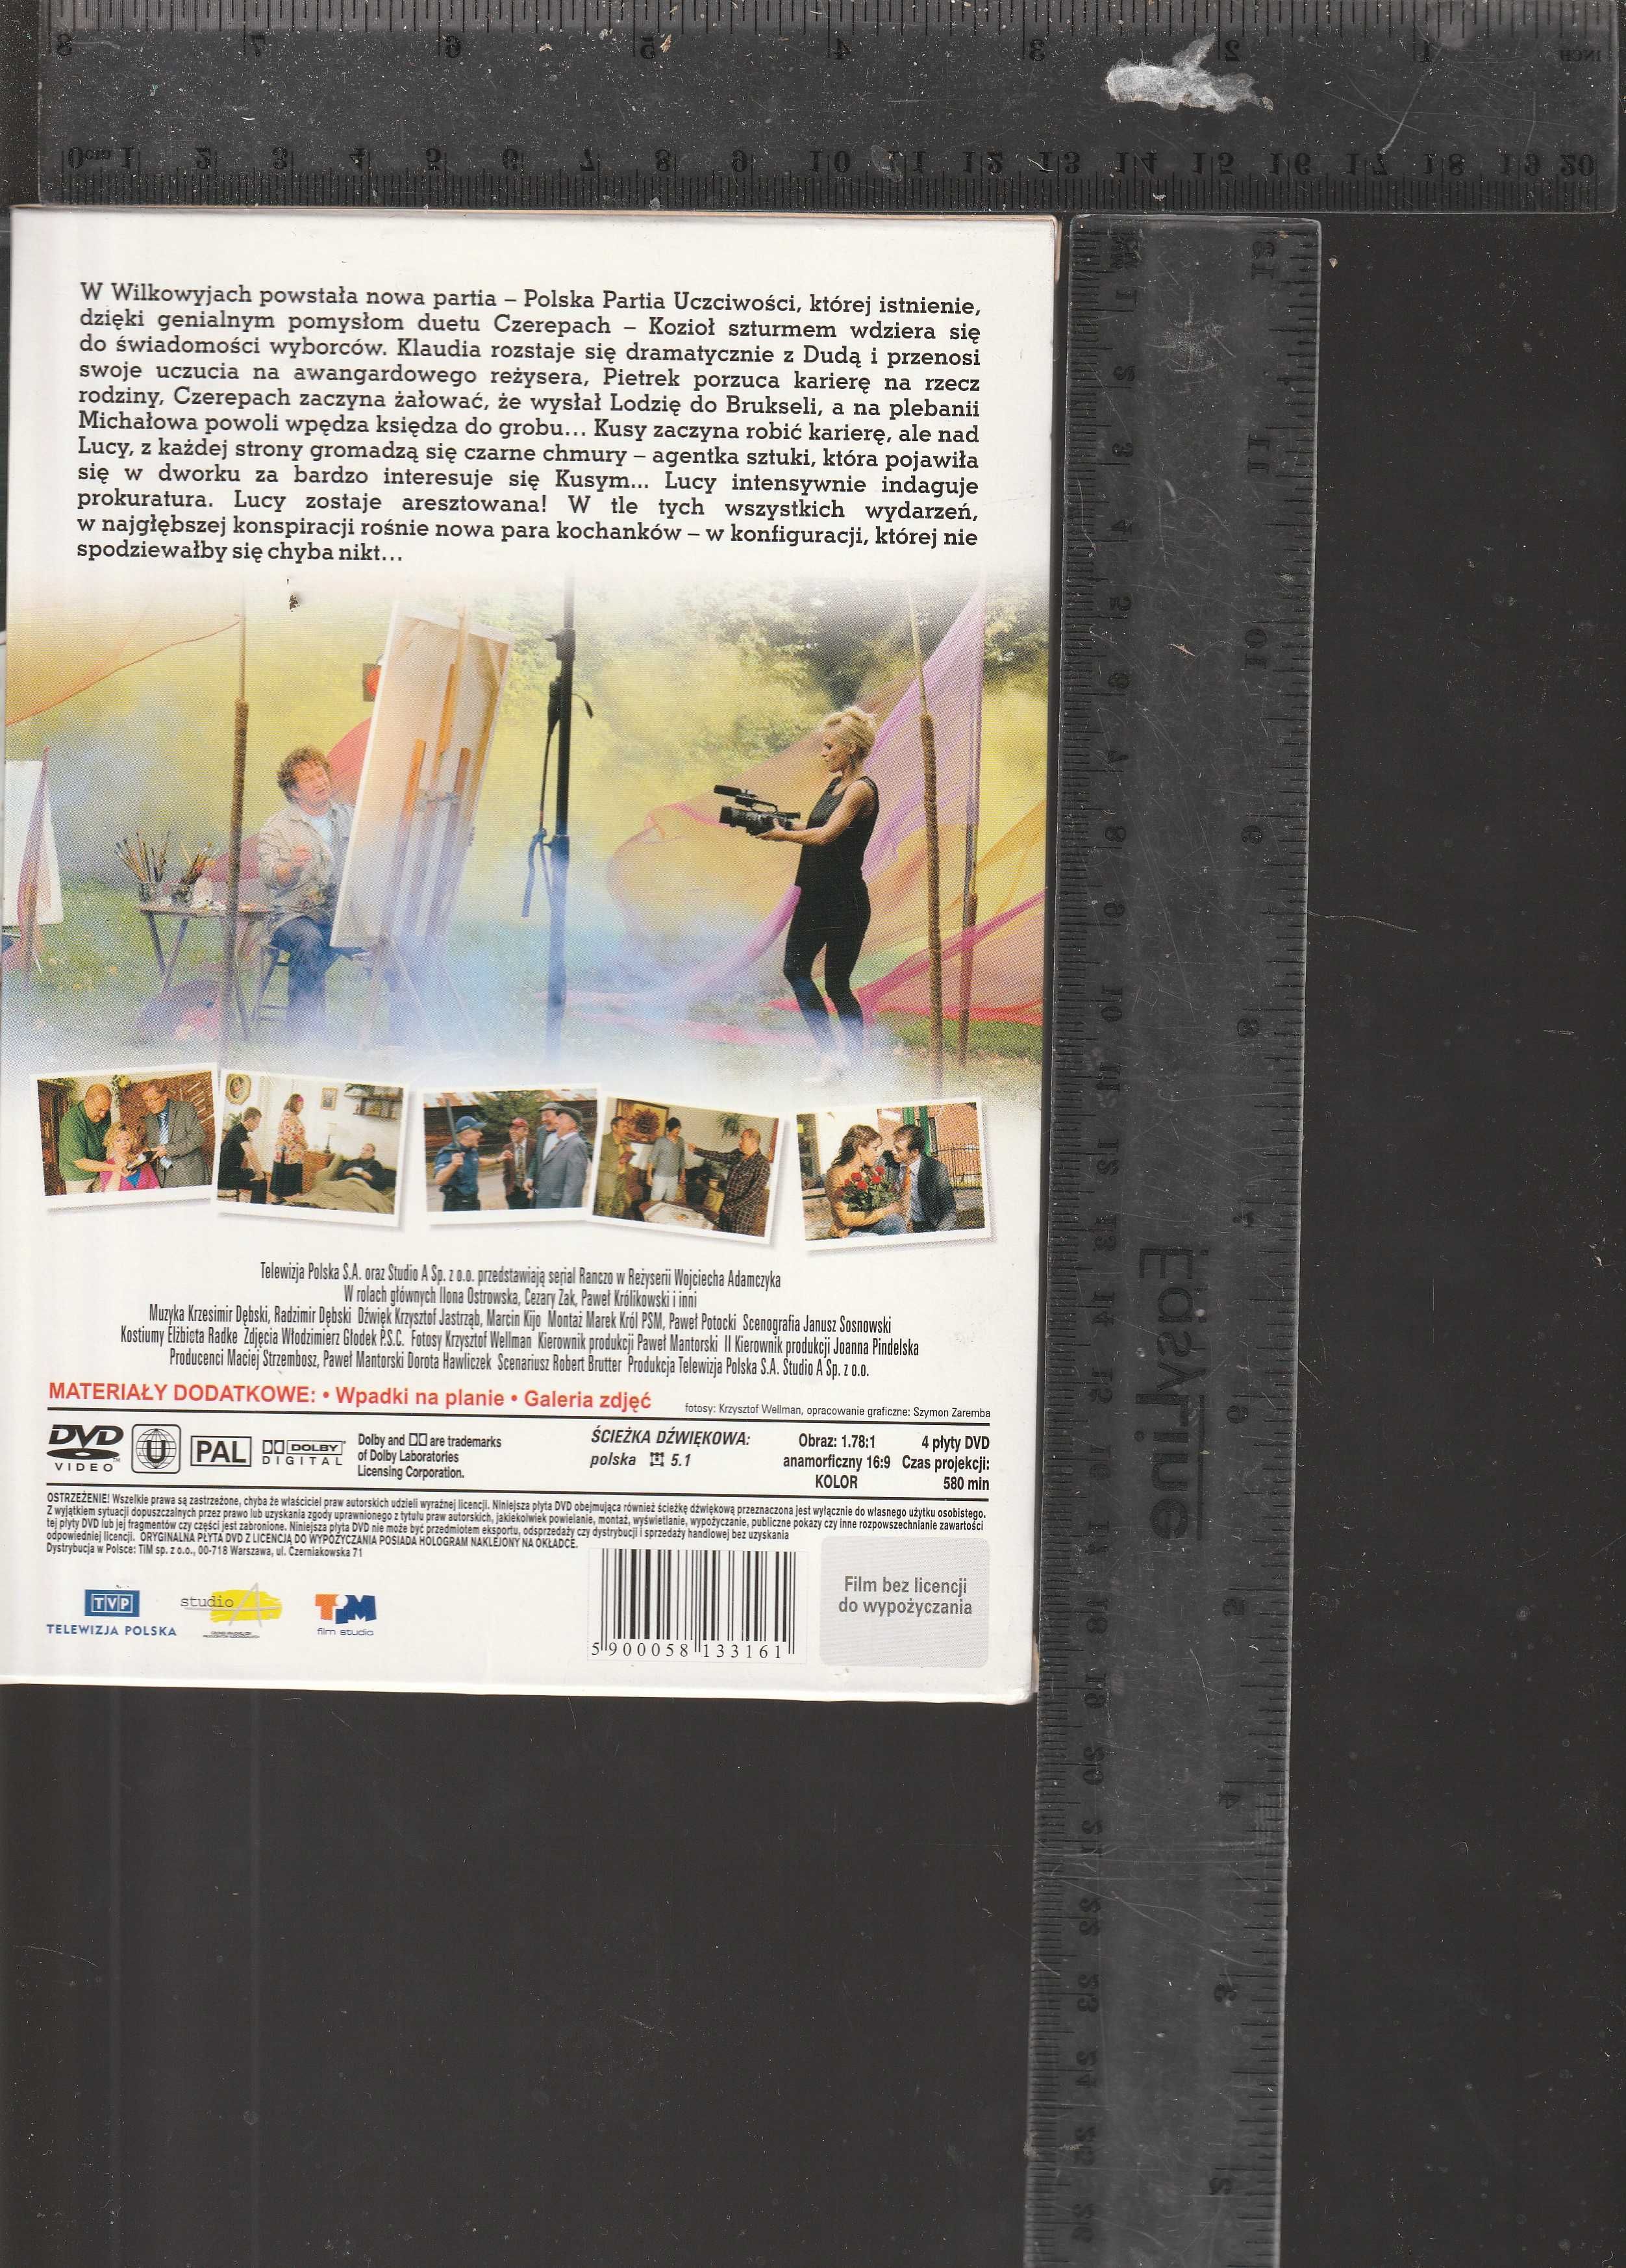 Serial Ranczo Sezon 7 Box 4 DVD